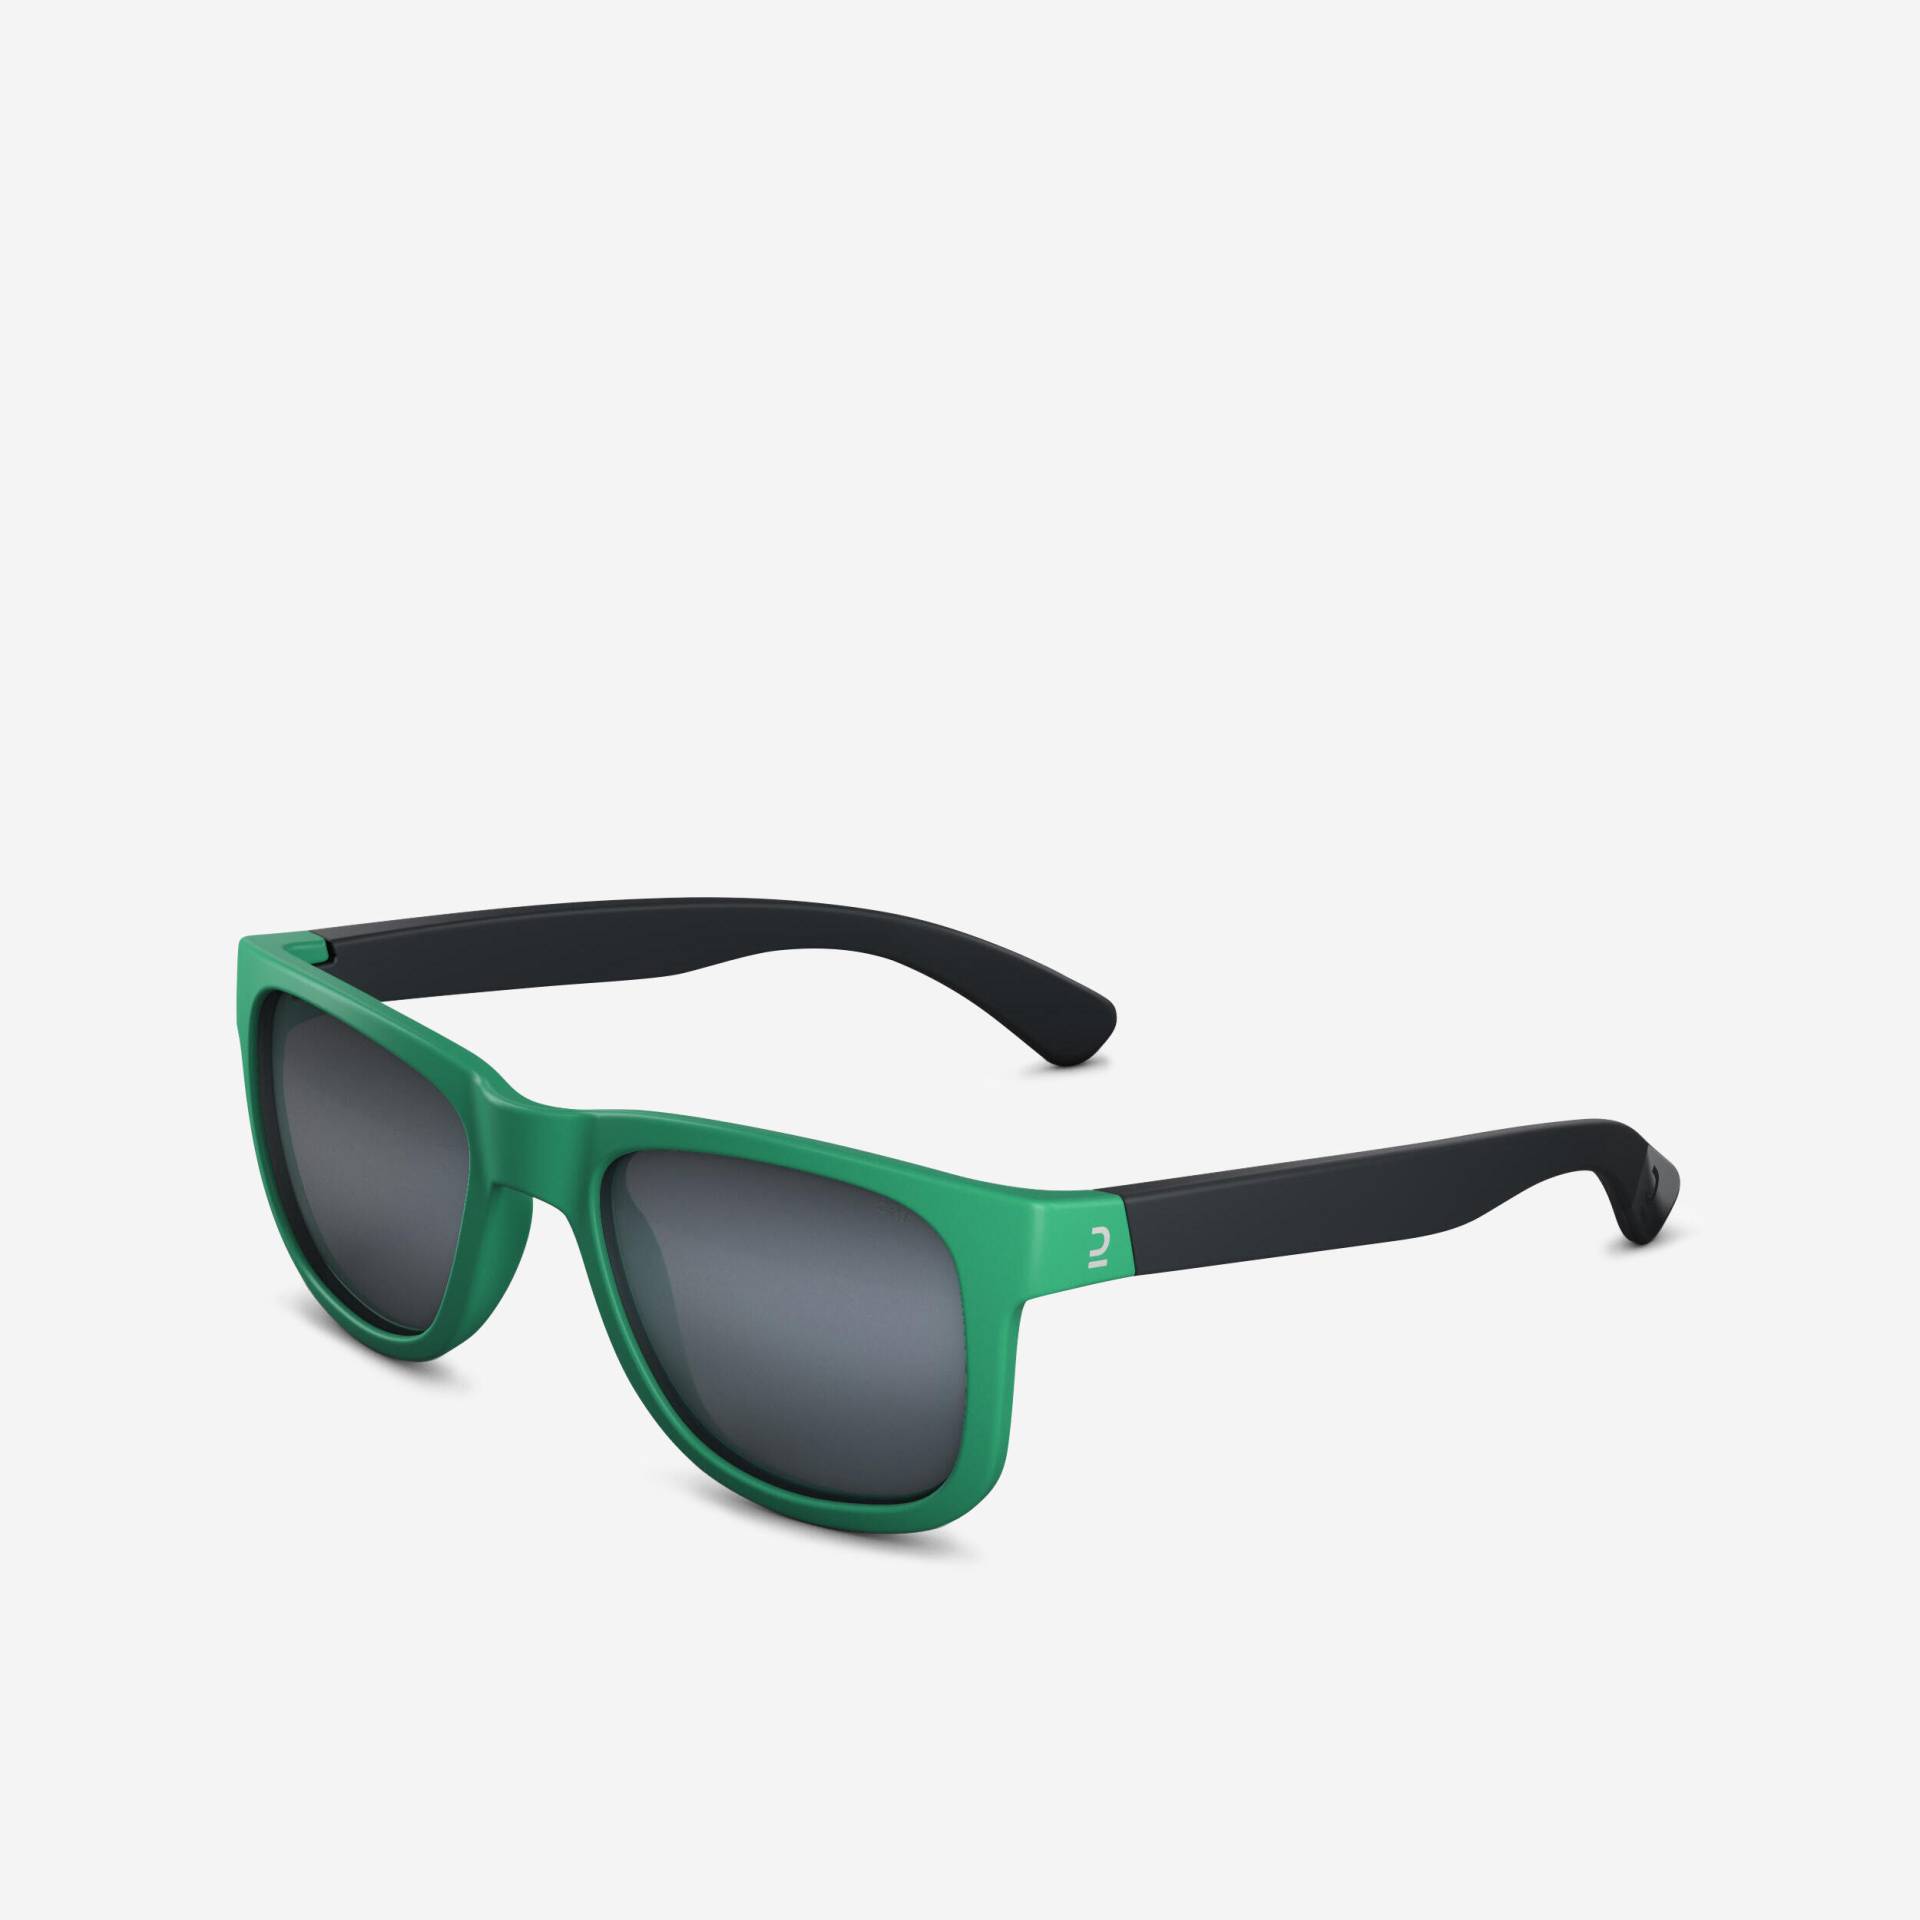 Sonnenbrille Kinder 4-8 Jahre Kategorie 3 Wandern - MH K140 schwarz/grün von QUECHUA